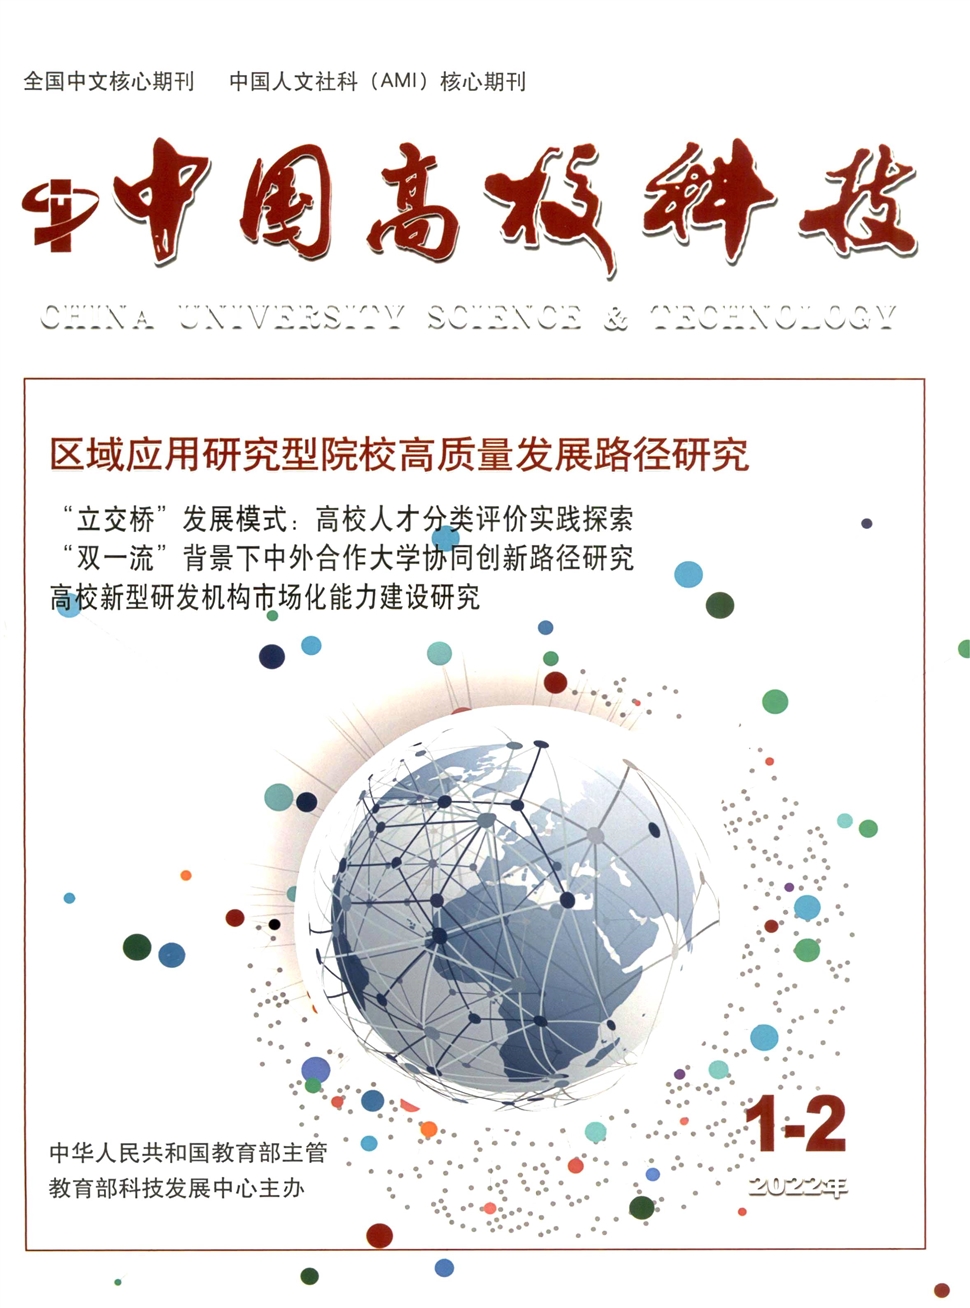 中国高校科技杂志